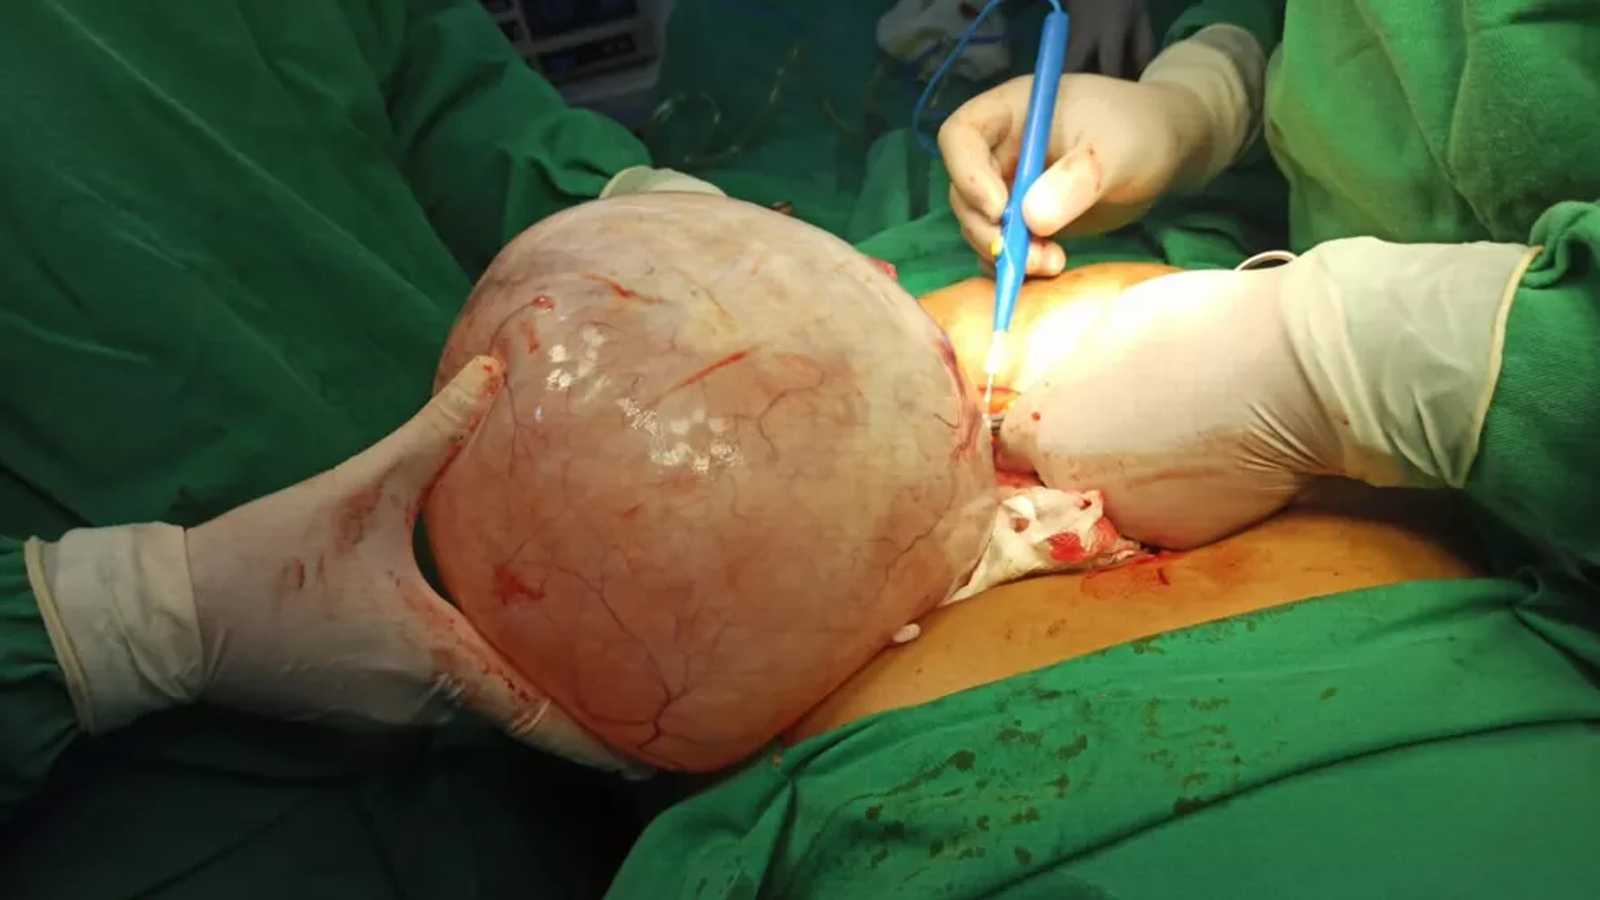 Integra Cirurgia - A remoção de um ou dos dois ovários, chama-se